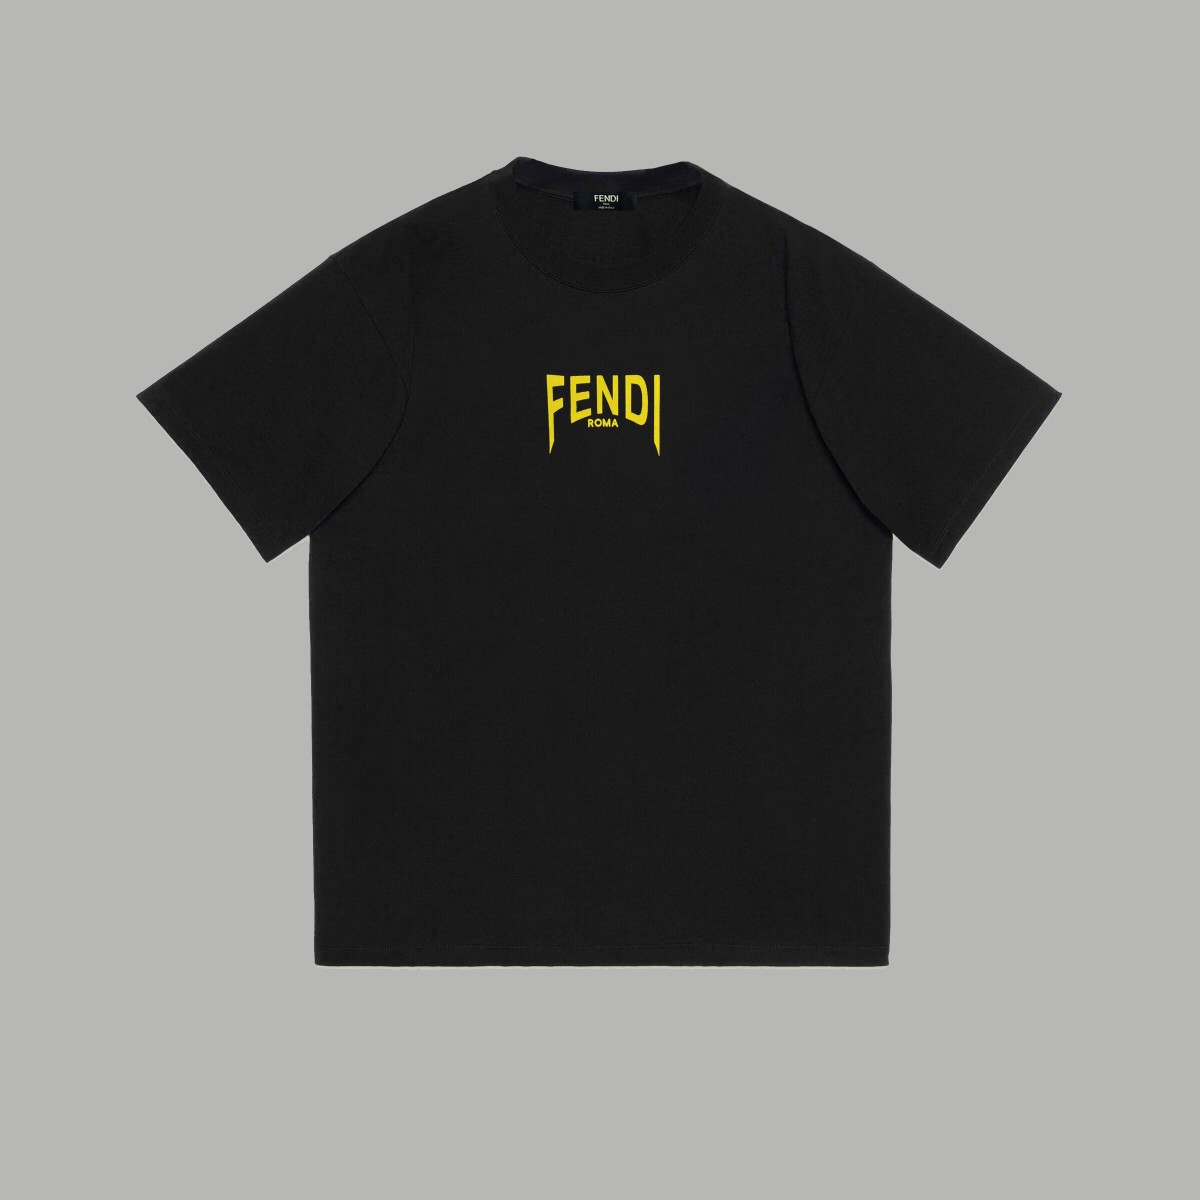 Fendi Clothing T-Shirt Doodle Printing Unisex Combed Cotton Short Sleeve